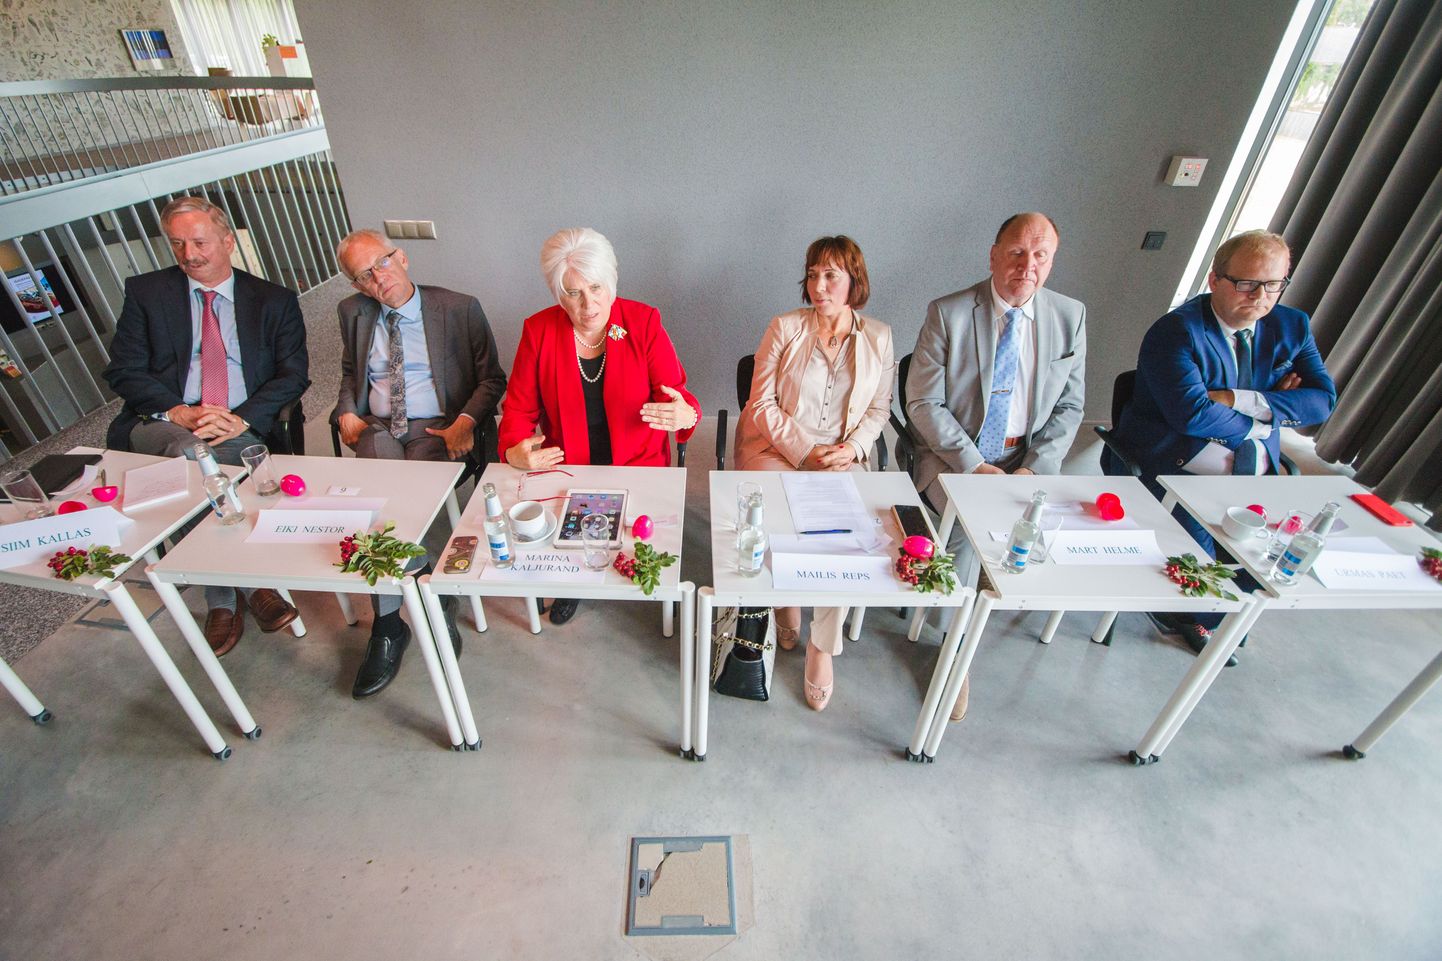 Presidendikandidaadid (vasakult) Siim Kallas, Eiki Nestor, Marina Kaljurand, Mailis Reps, Mart Helme ja Urmas Paet. Pildilt on veel puudu Allar Jõks.